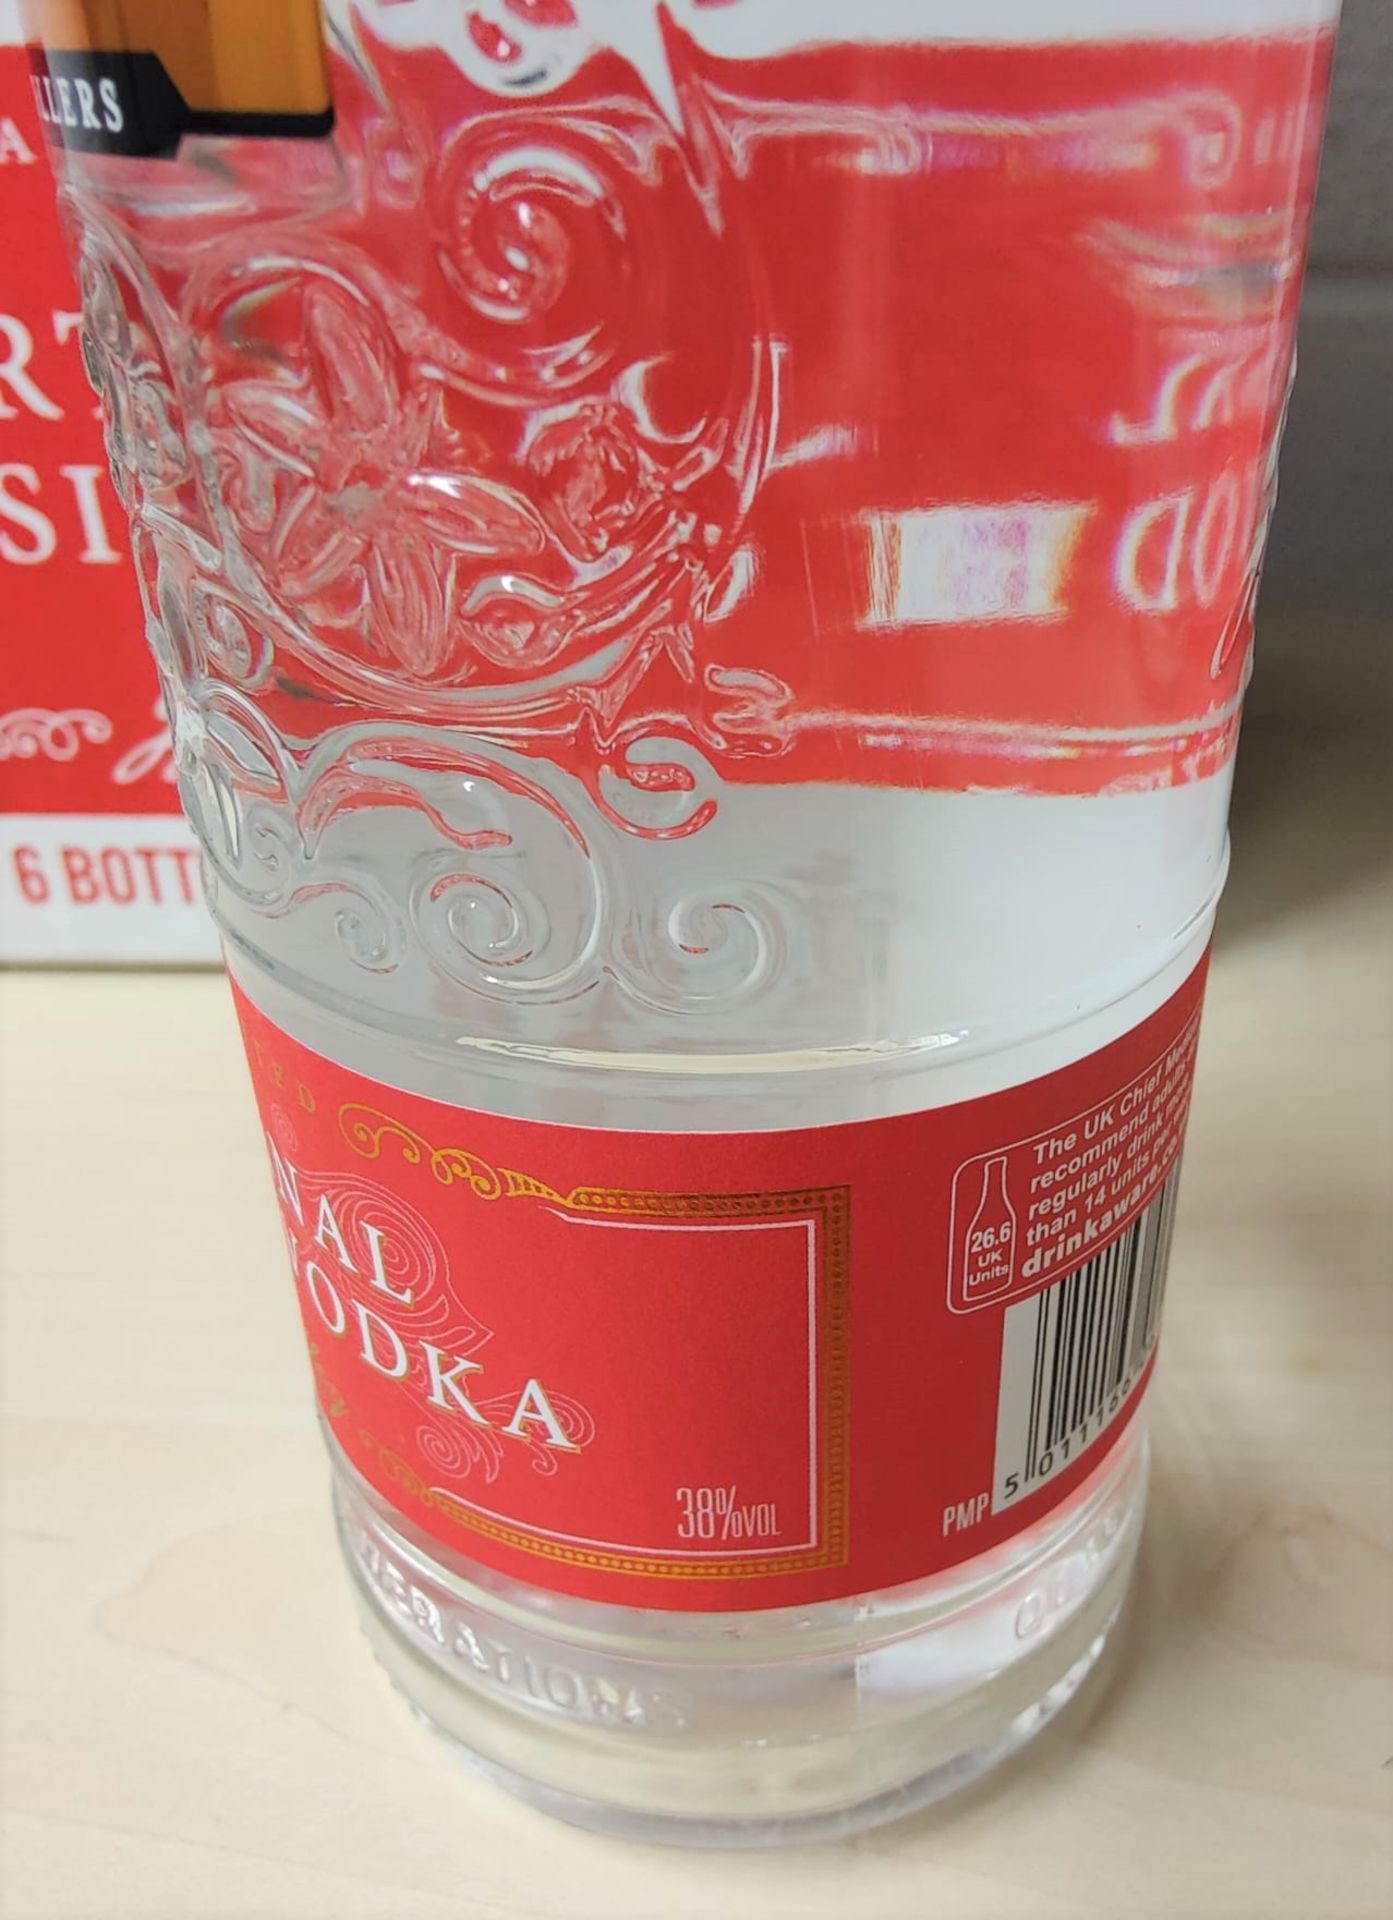 1 x Bottle of J.J Whitley Artisanal 70cl Vodka - Multi Award Winning Vodka - 38% Volume - New Sealed - Image 3 of 3